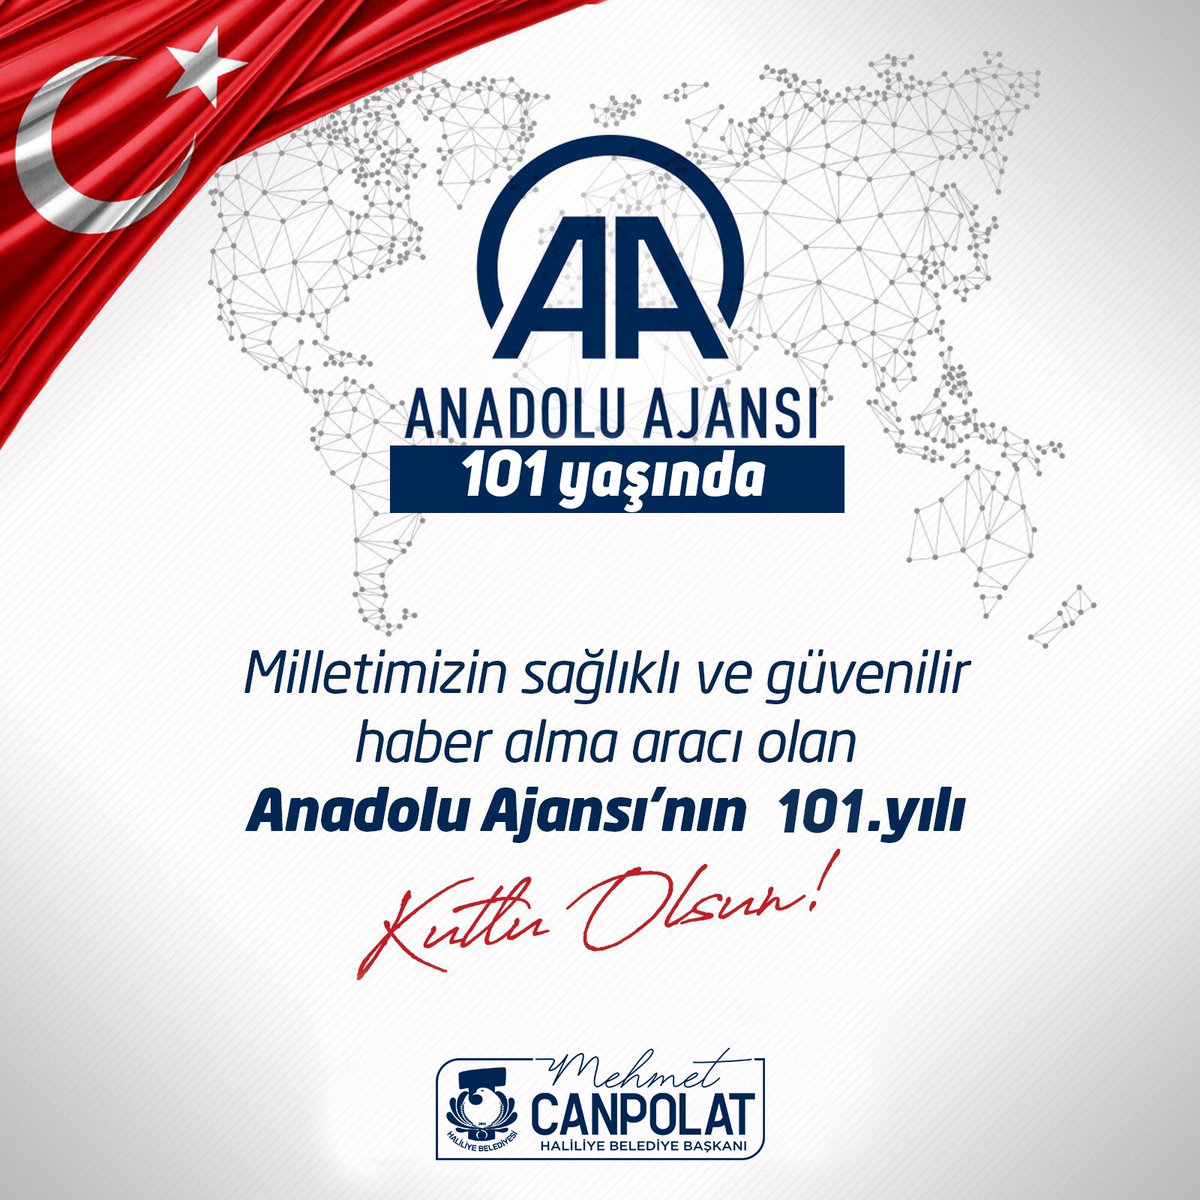 Anadolu'nun sesini bütün Dünya'ya duyuran Anadolu Ajansı'nın 101. kuruluş yılını kutluyorum. @anadoluajansi